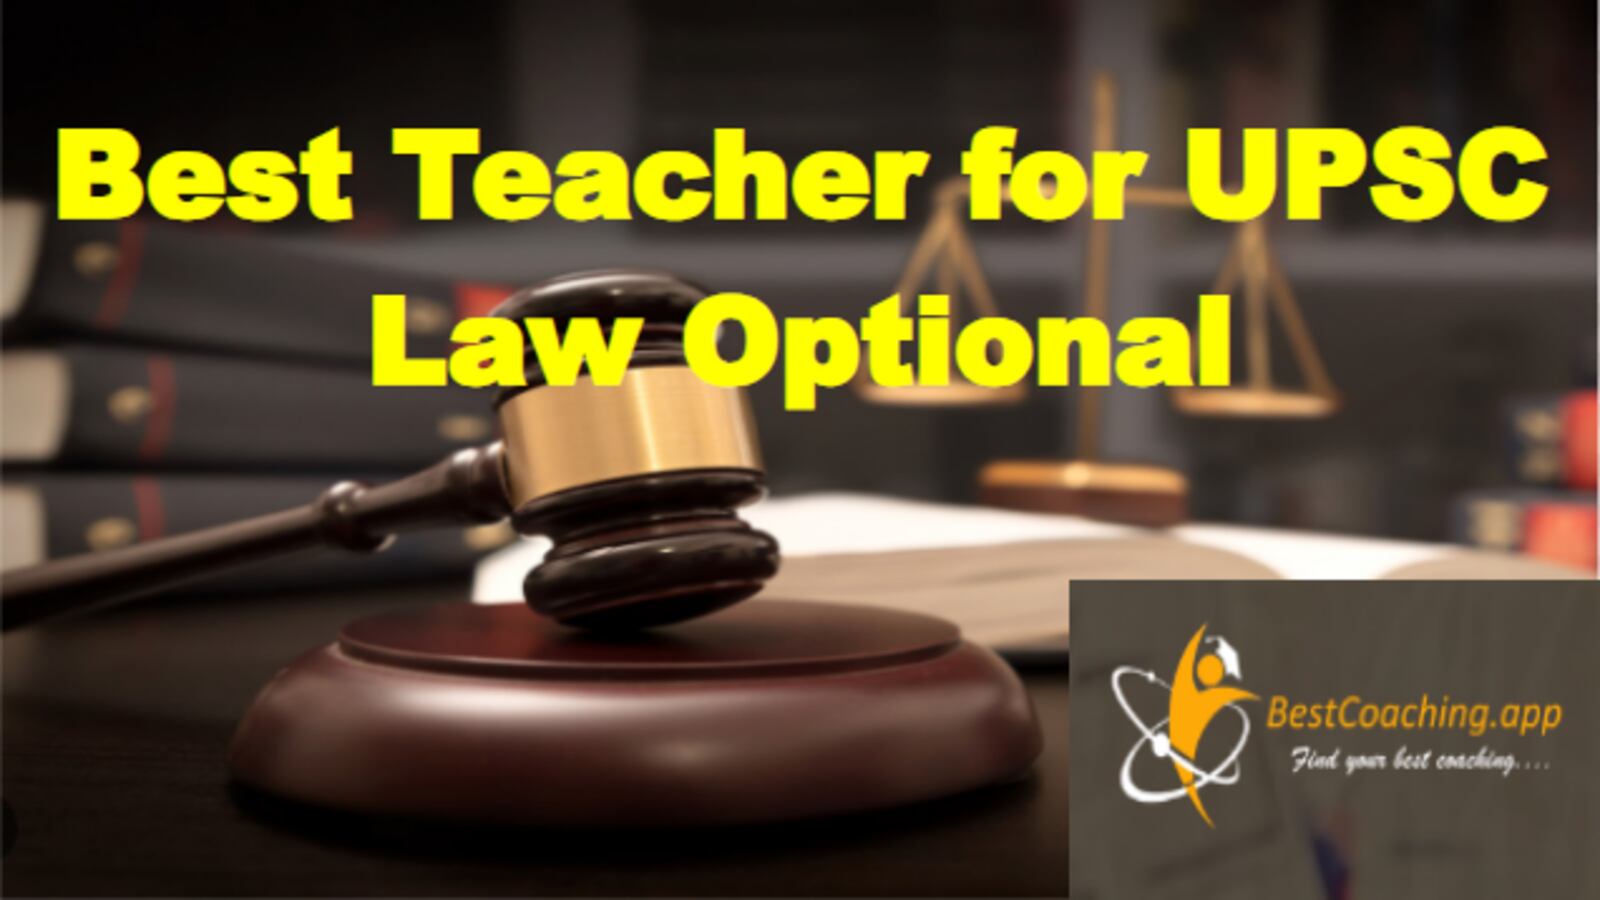 Best Teacher for UPSC Law Optional